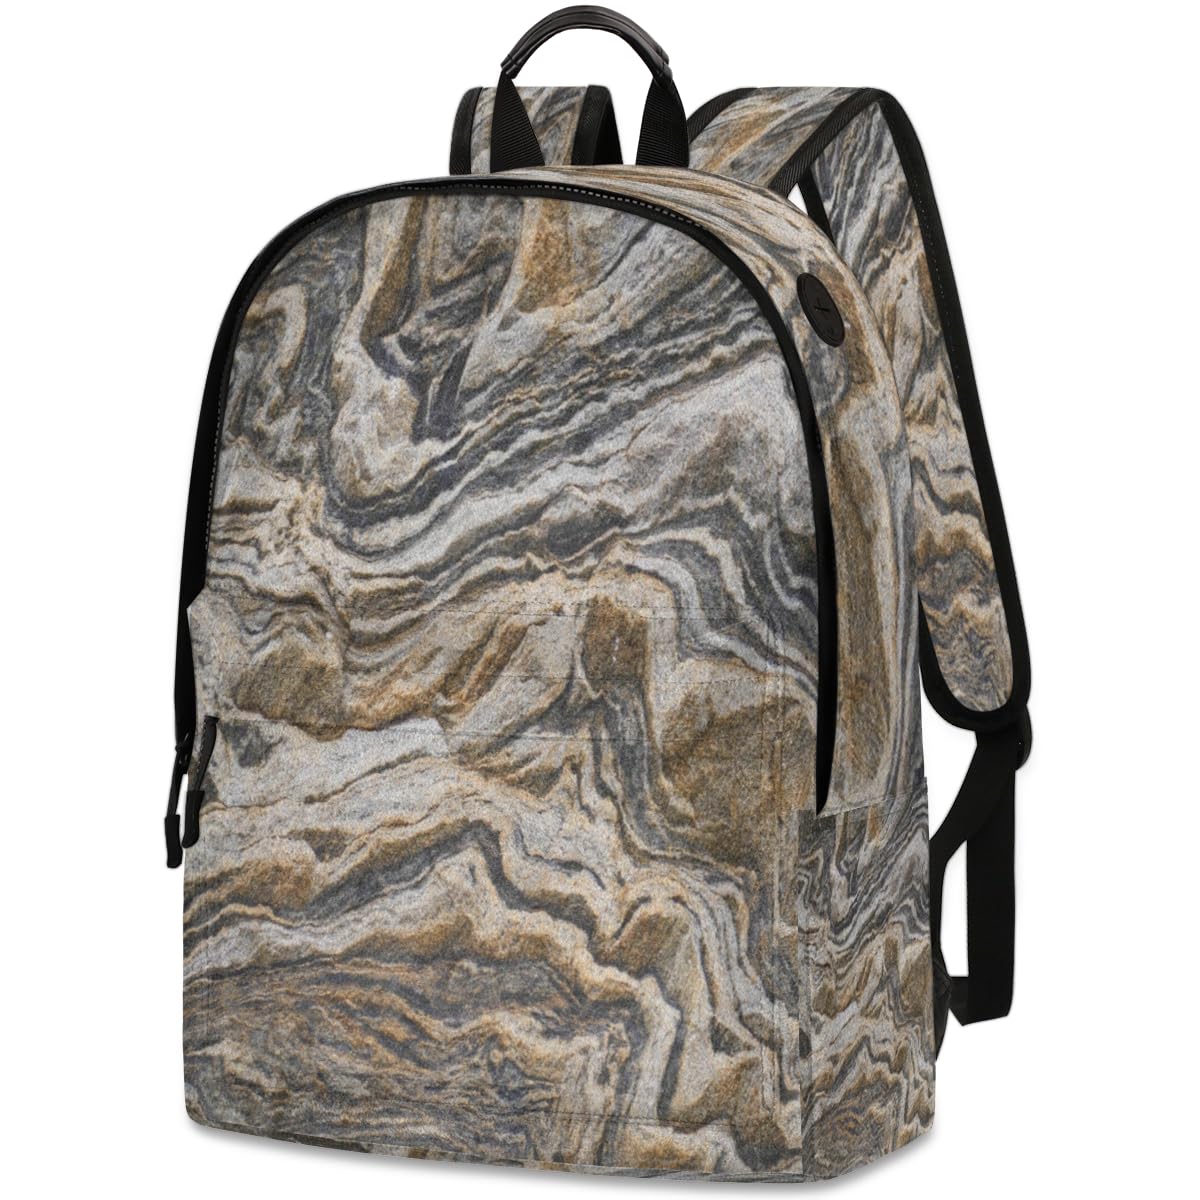 送料無料QsirBC Brown Marble Texture Leather Backpack for Women Laptop Backpack Zipper Closure Adjustable Strap Daypack fo